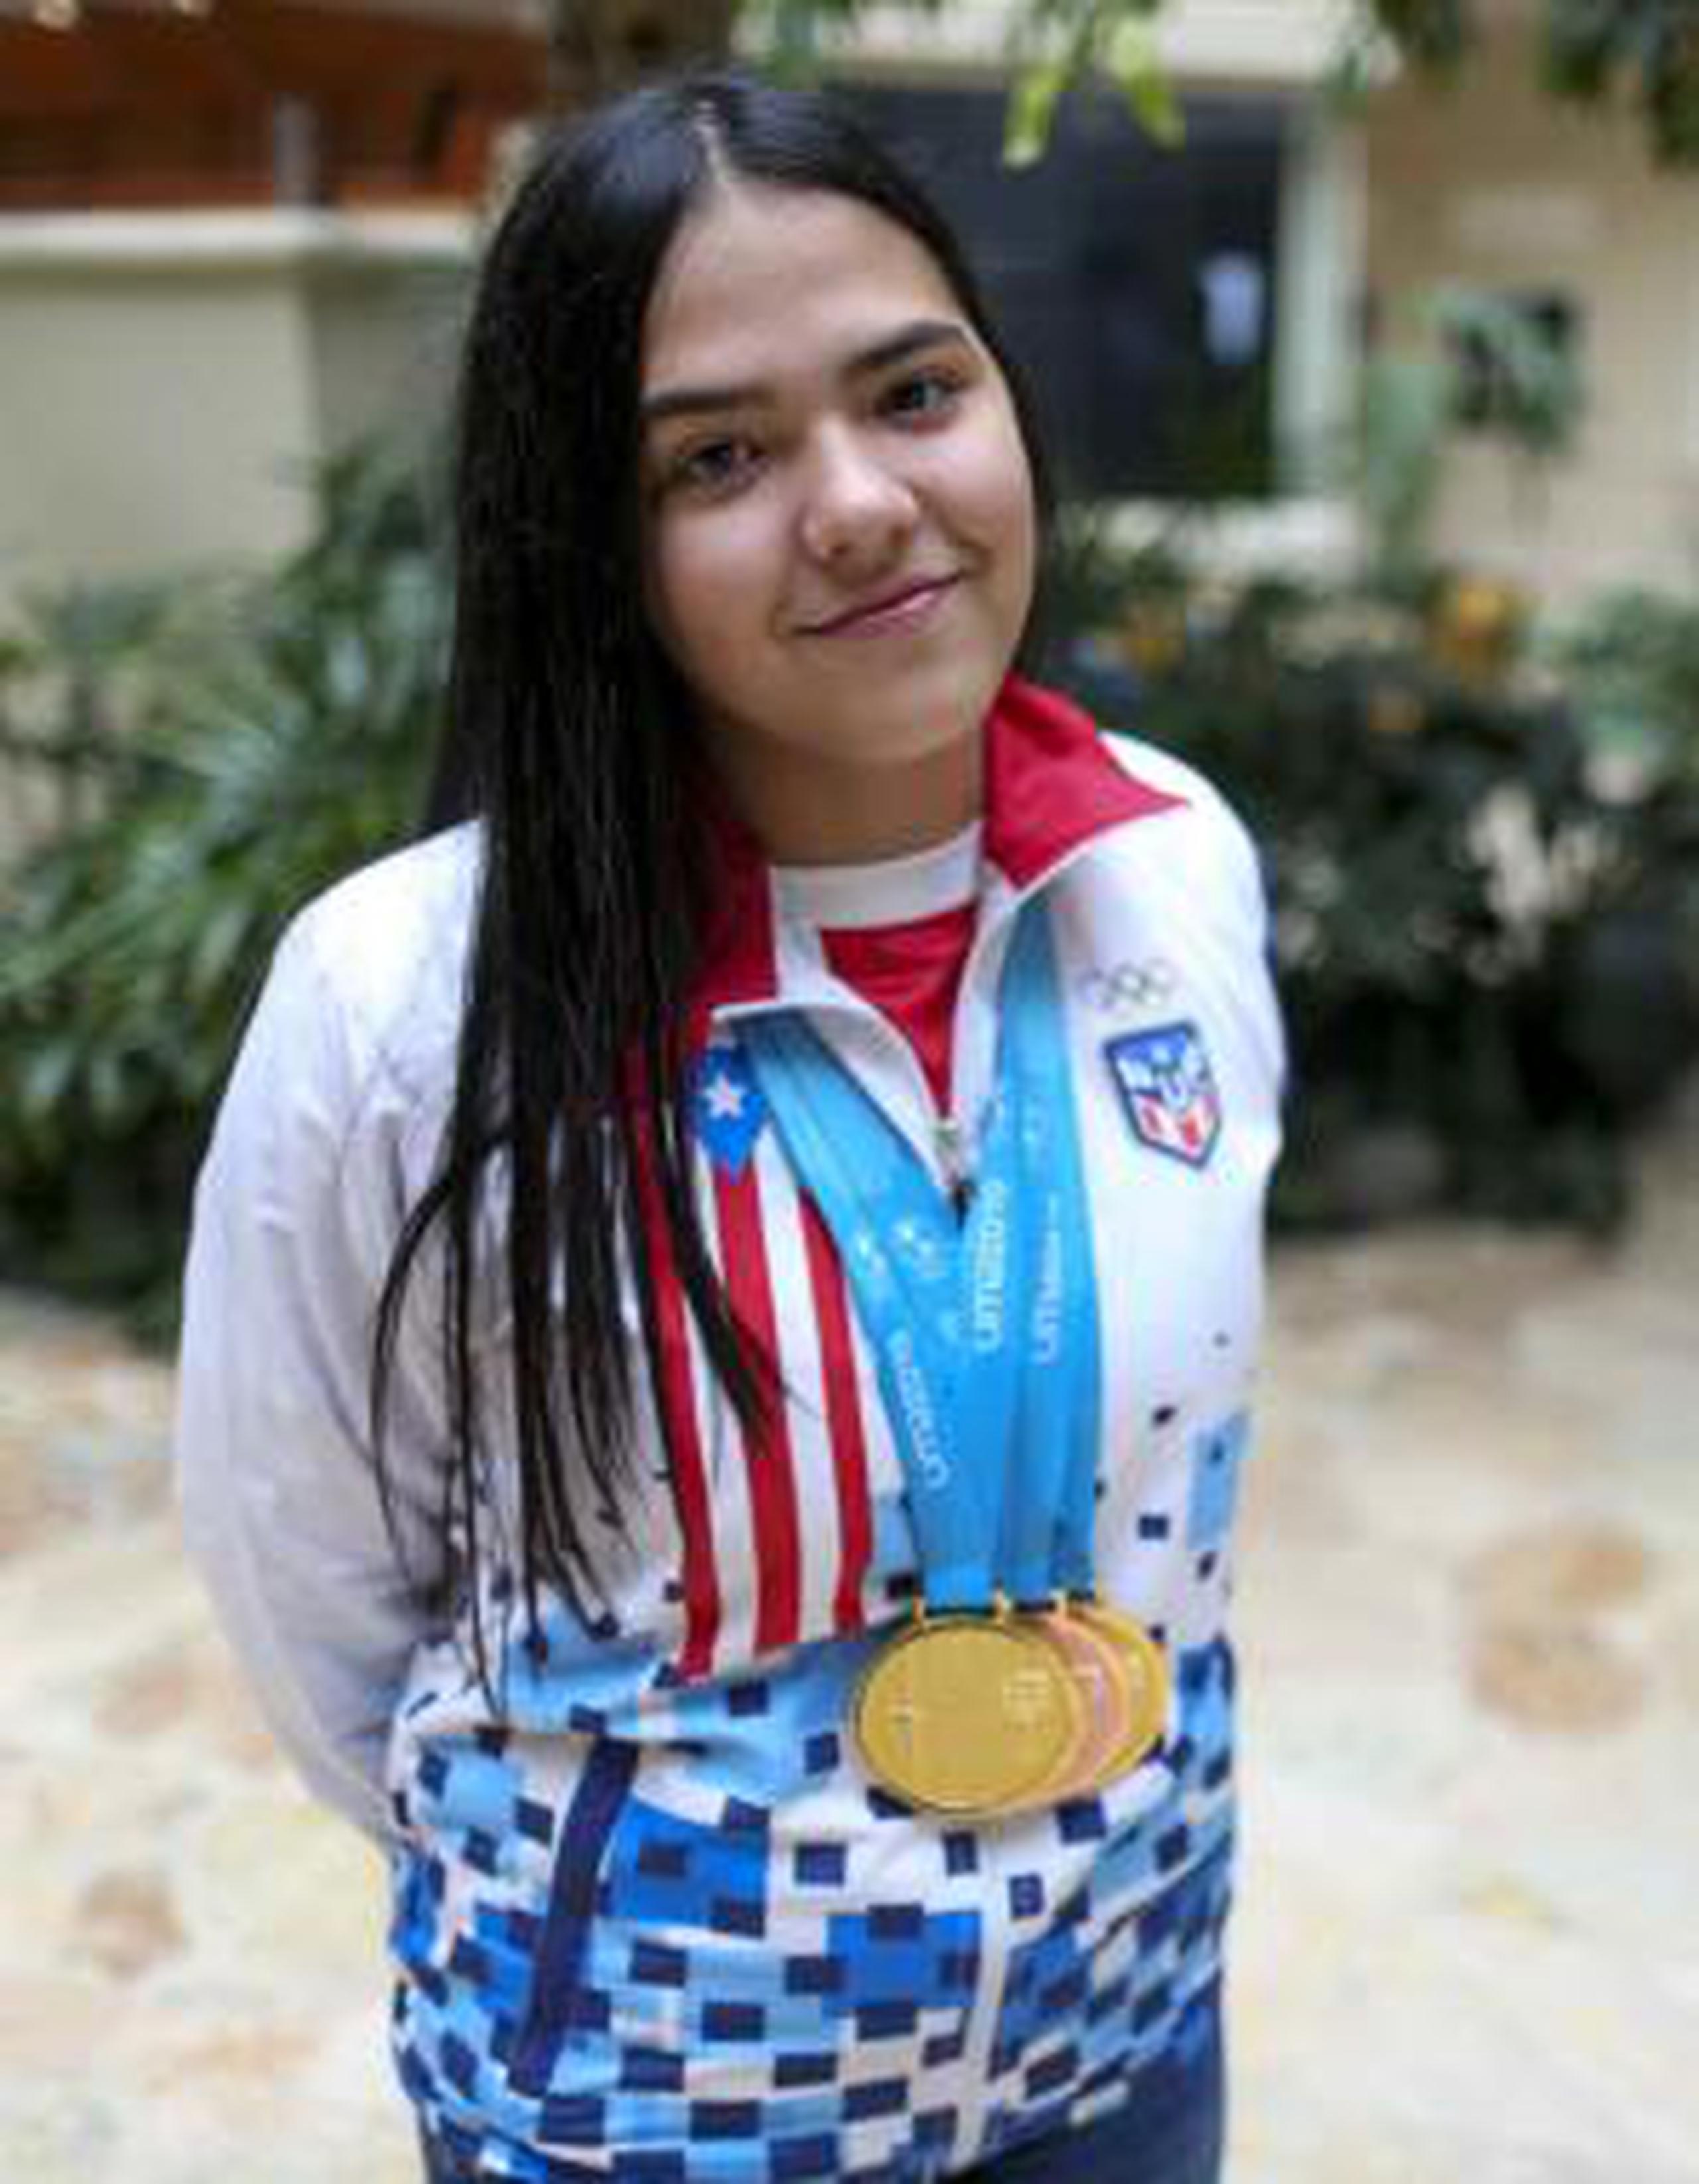 Adriana Díaz, con tan solo 18 años, es ya la máxima ganadora de medallas de oro de Puerto Rico en unos Juegos Panamericanos en la historia. Logró esto en Lima 2019. (david.villafane@gfrmedia.com)